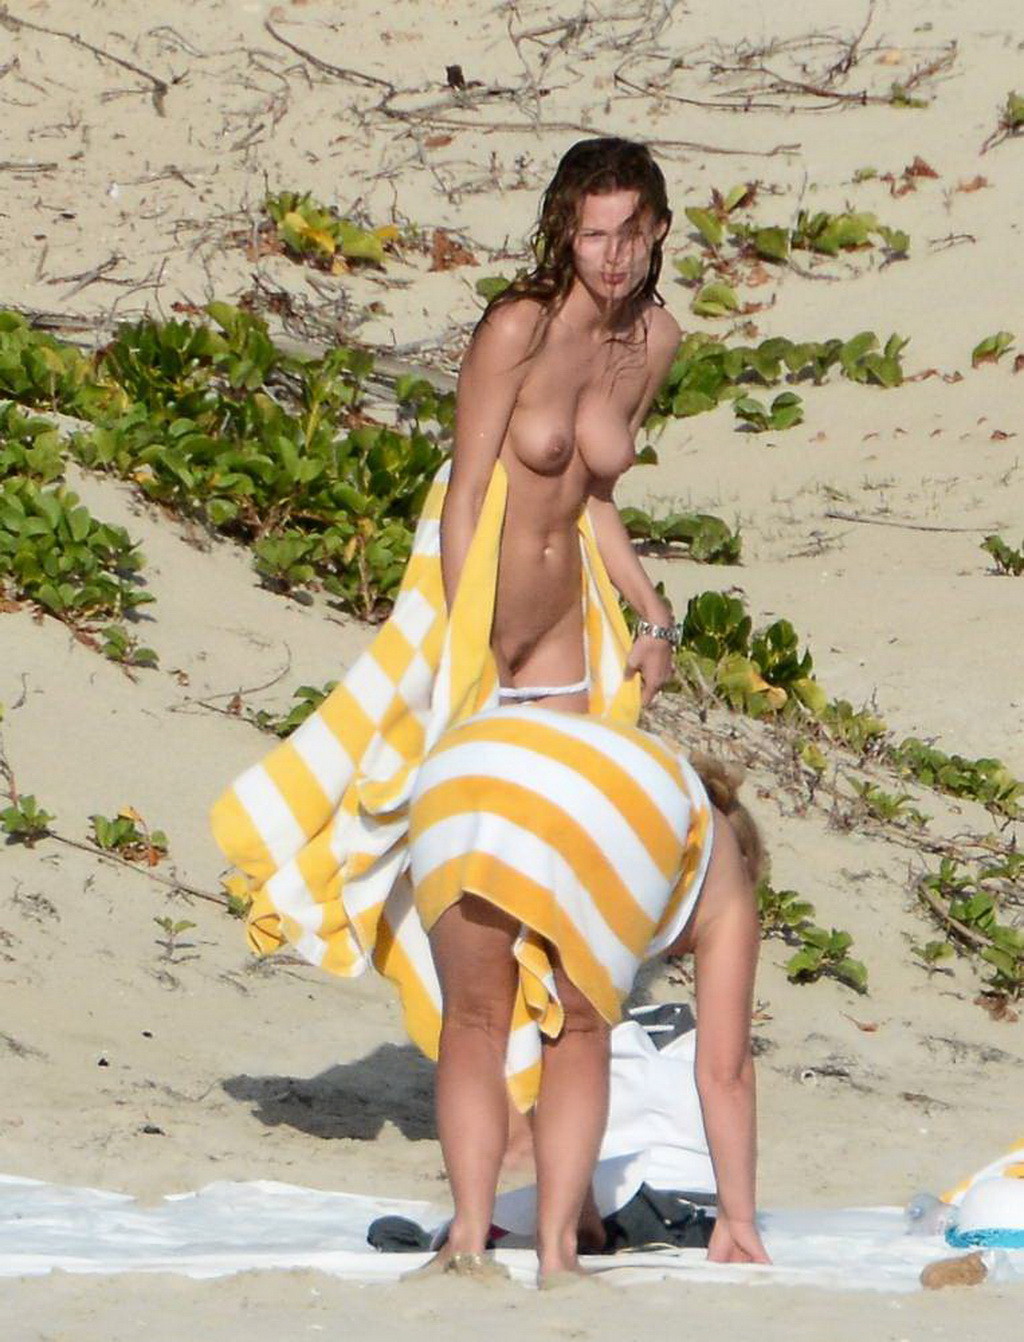 Edita vilkeviciute völlig nackt an einem Strand in Stbarts erwischt
 #75199958